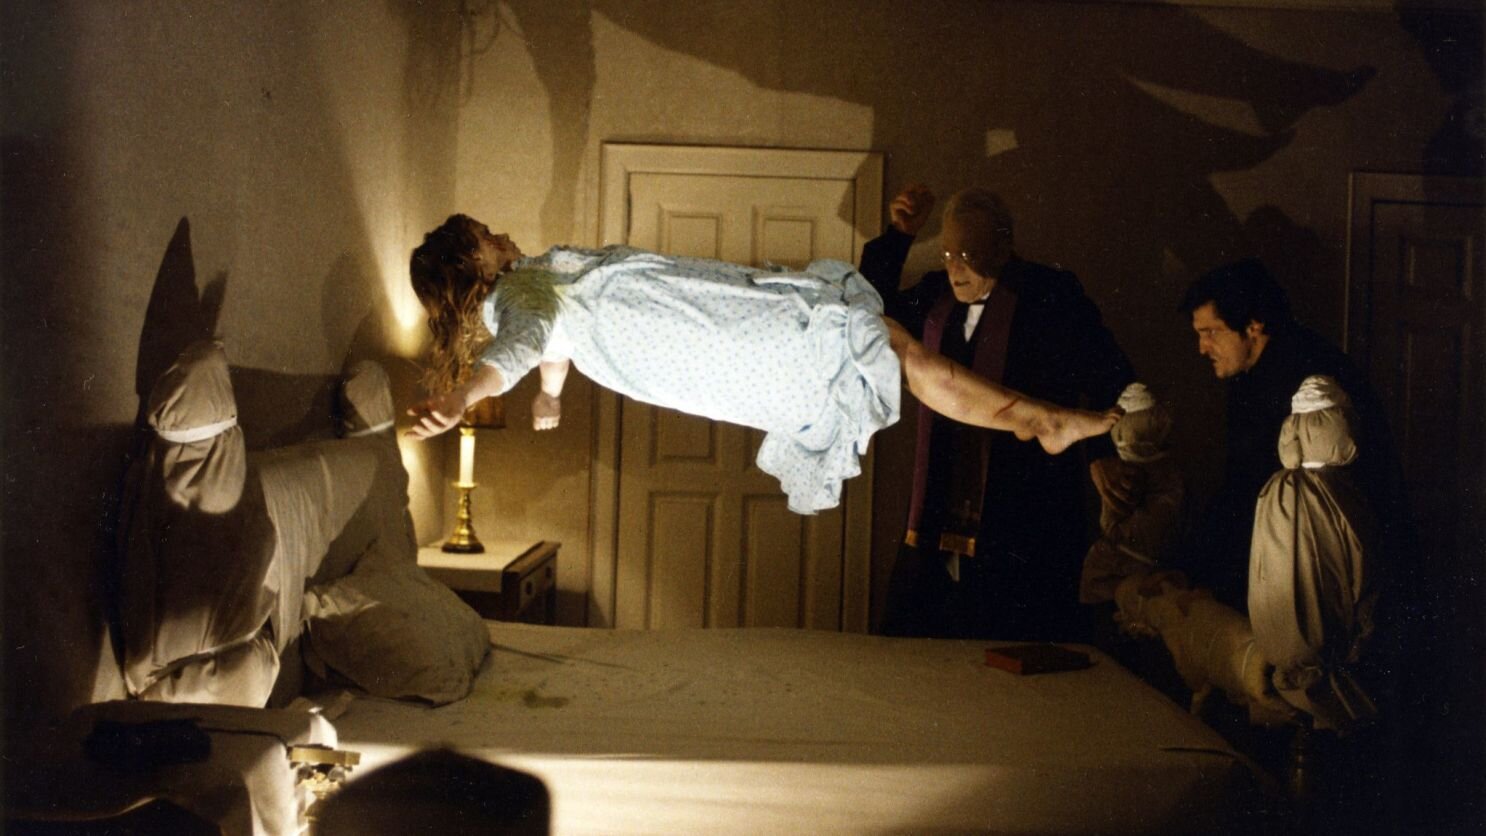 The Exorcist image film